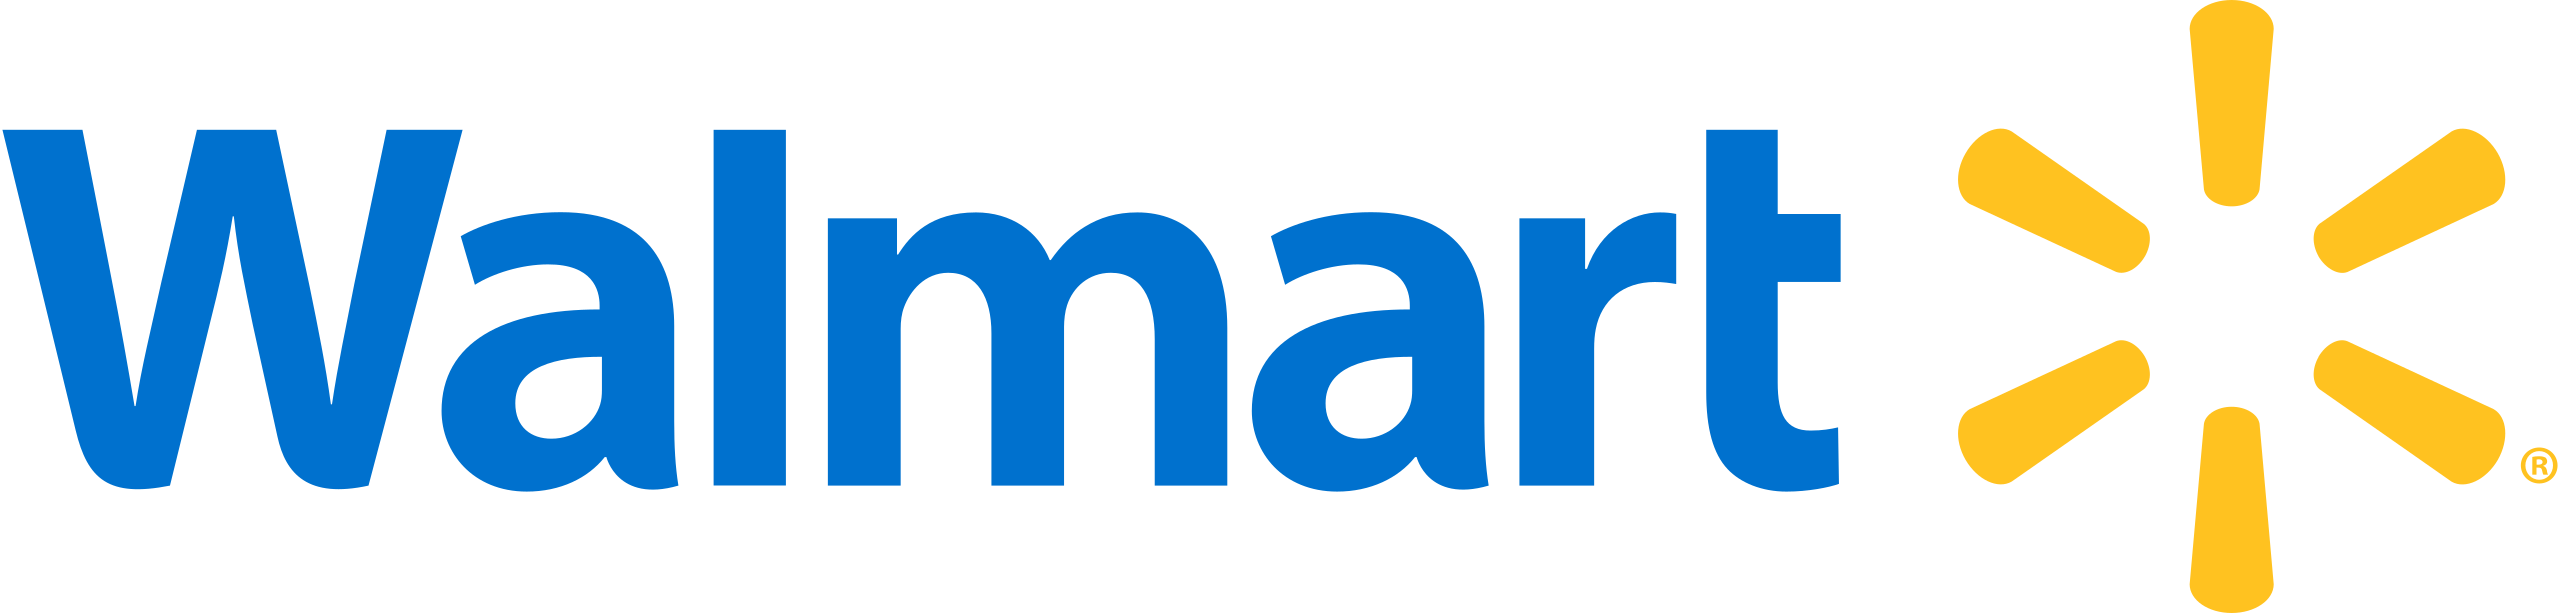 File:Walmart logo.svg - Wikimedia Commons